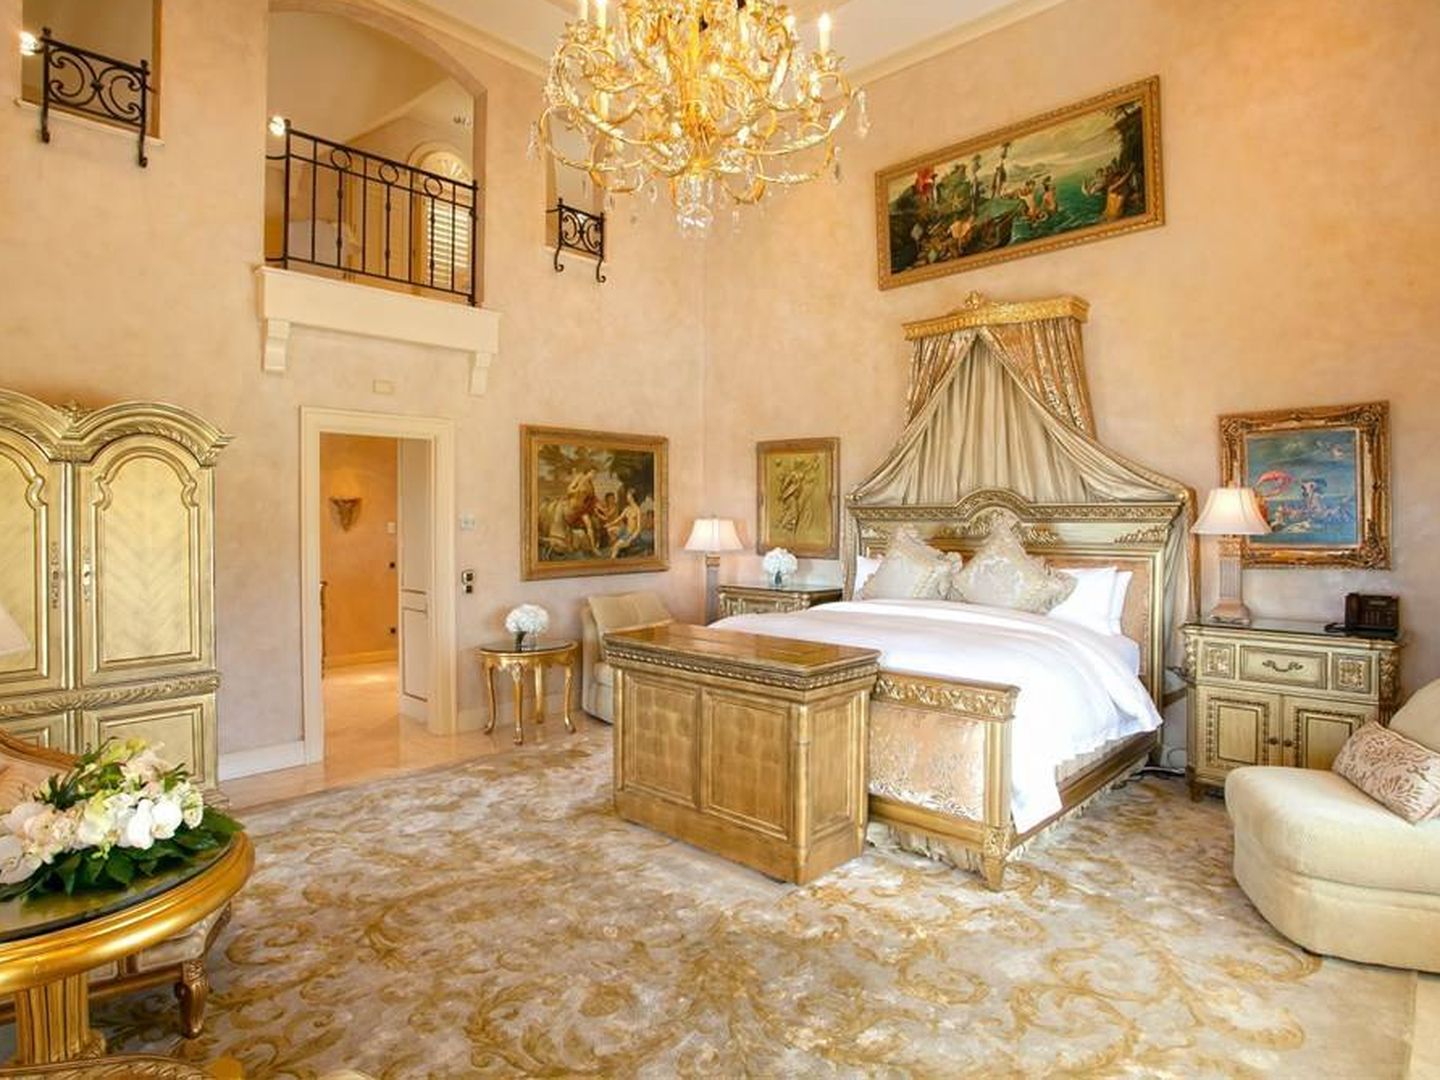 La mansión cuenta con lujosas habitaciones. (Cortesía de luxurypulse.com)